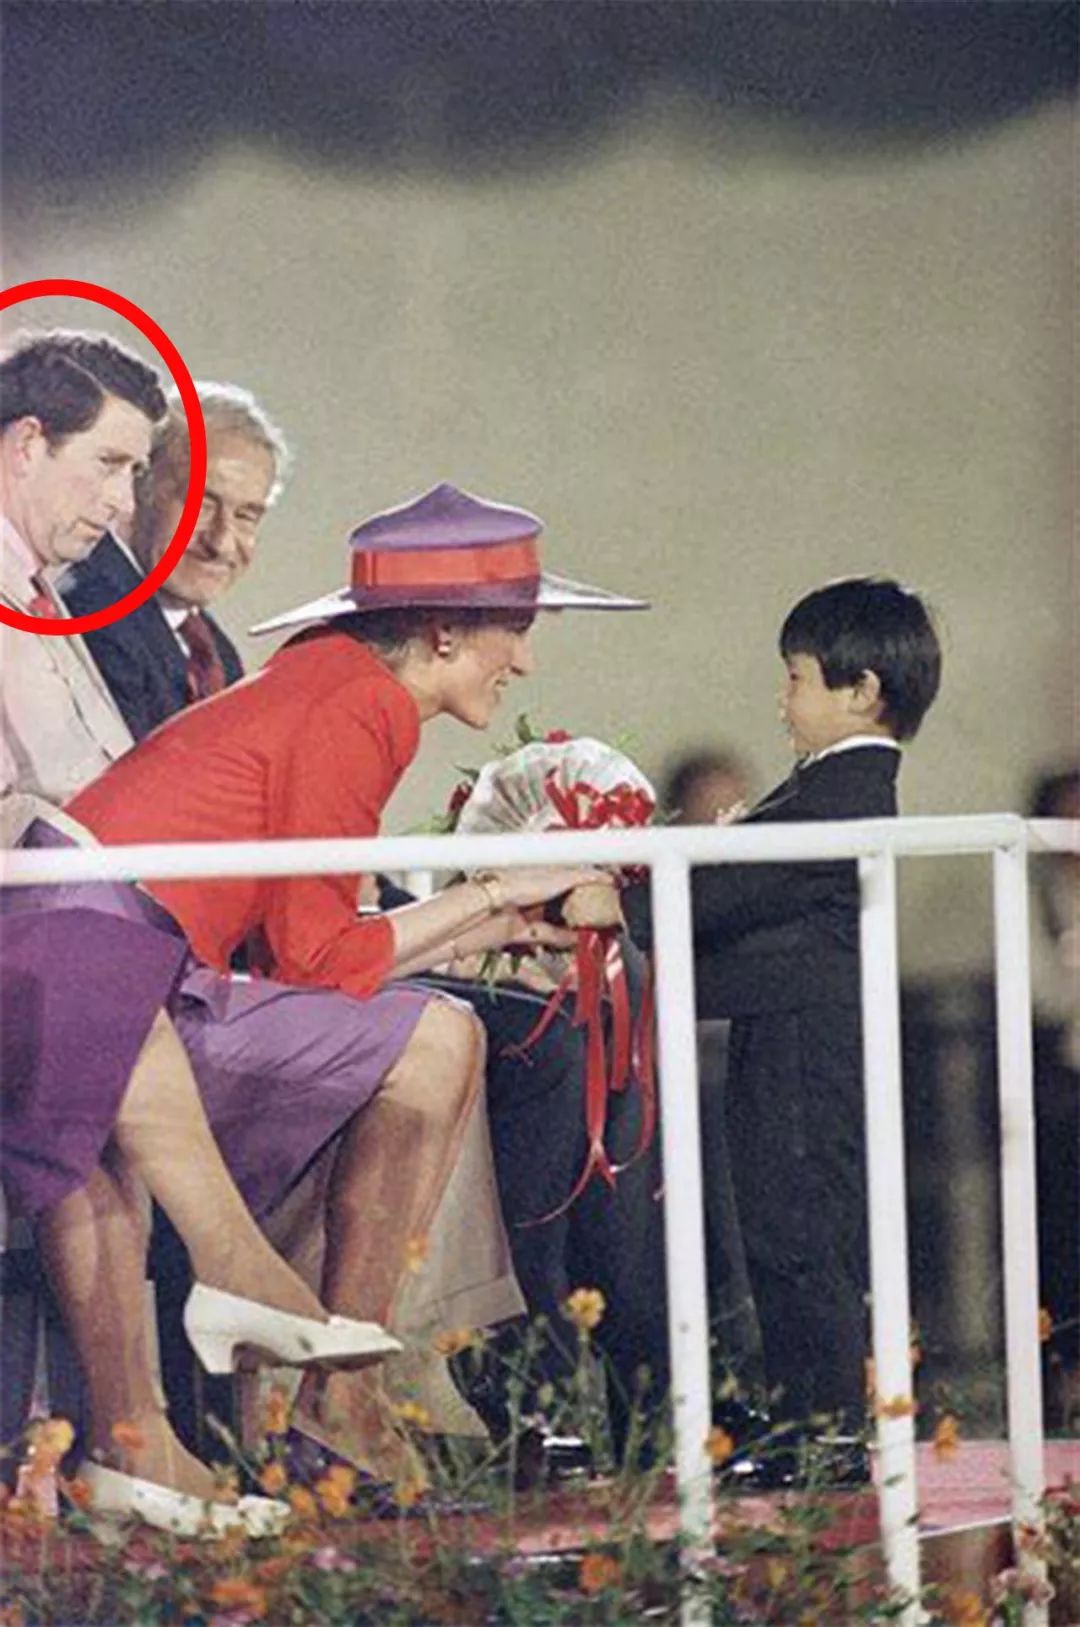 原创30年前戴安娜王妃出访中国香港弯腰帮老奶奶捡起拐杖好暖心